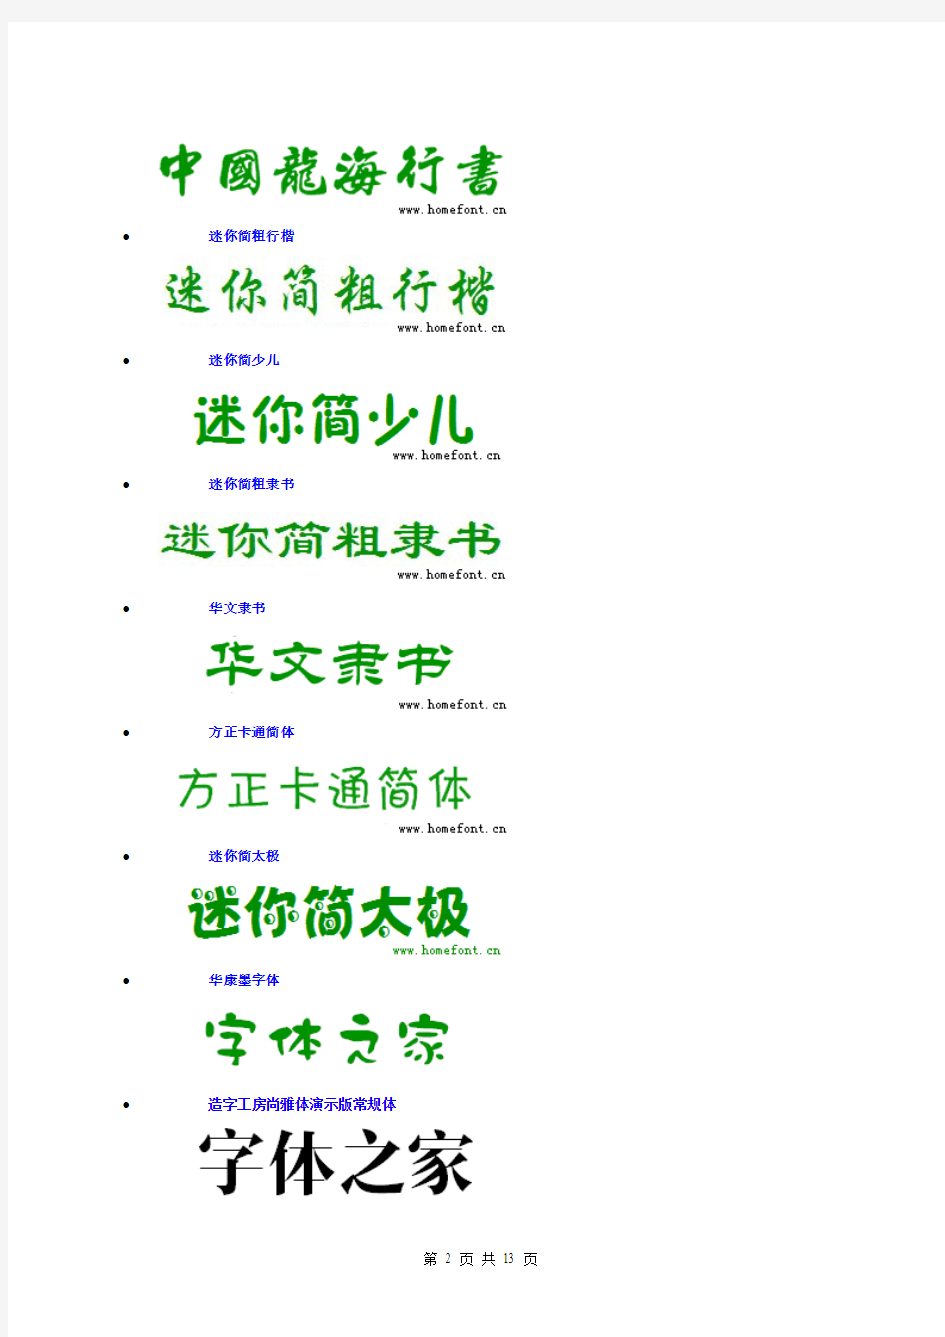 中英文字体样式对照表大全